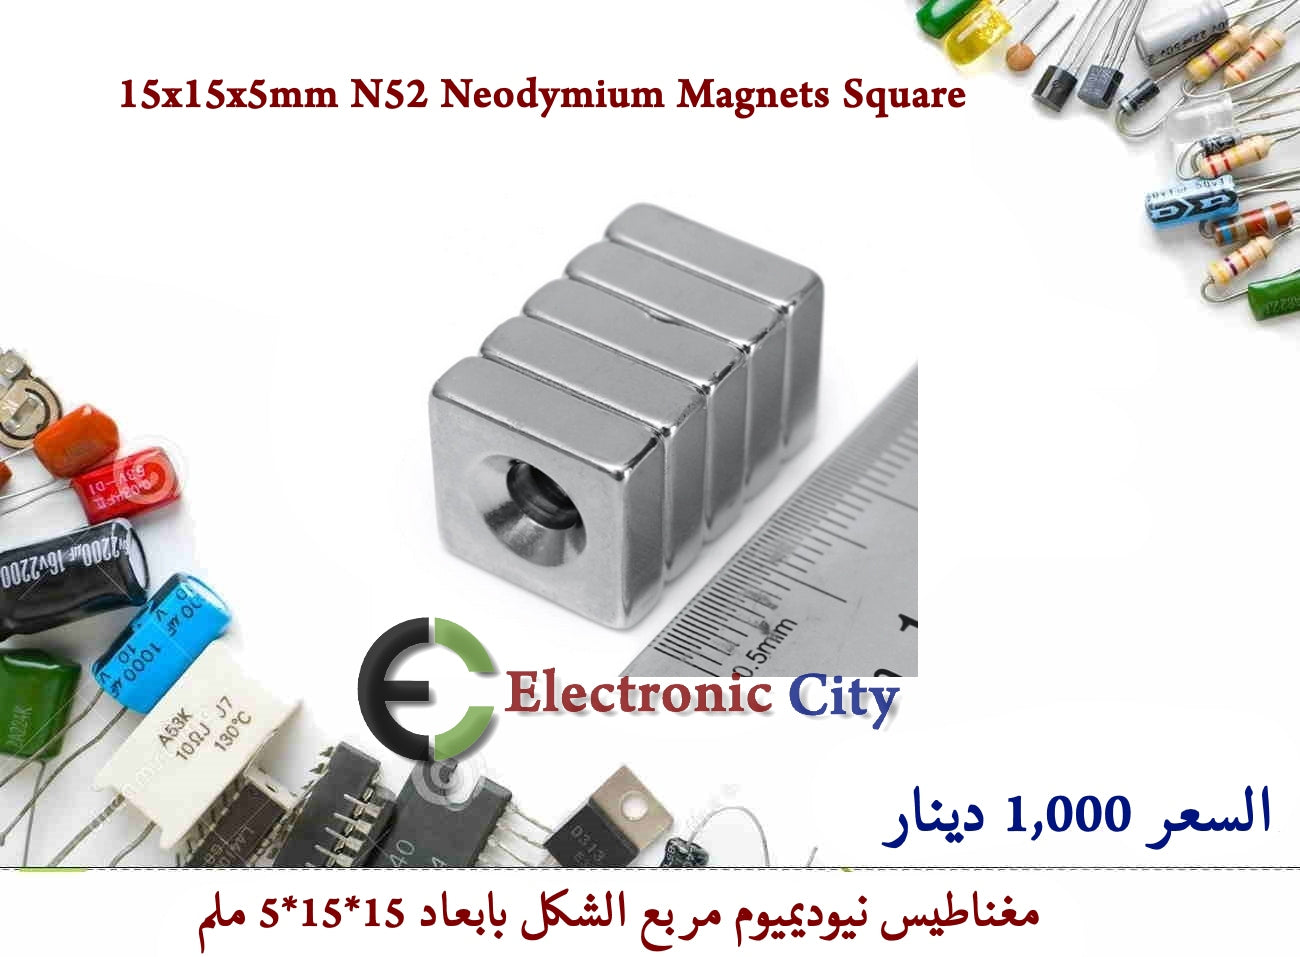 15x15x5mm N52 Neodymium Magnets Square